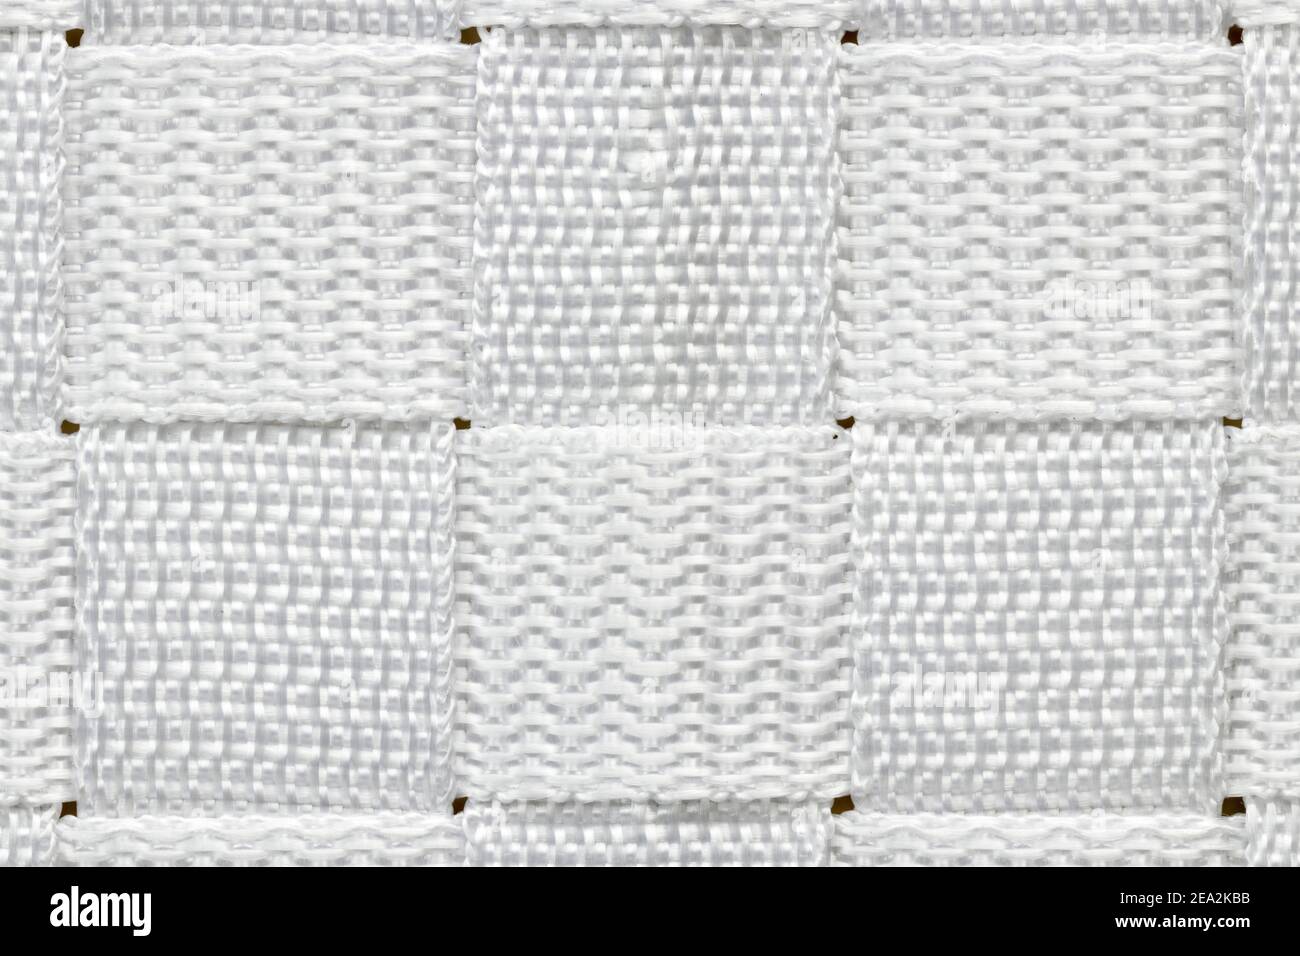 Résumé alternance horizontale et verticale composée de carrés de nylon blanc tissé. Banque D'Images